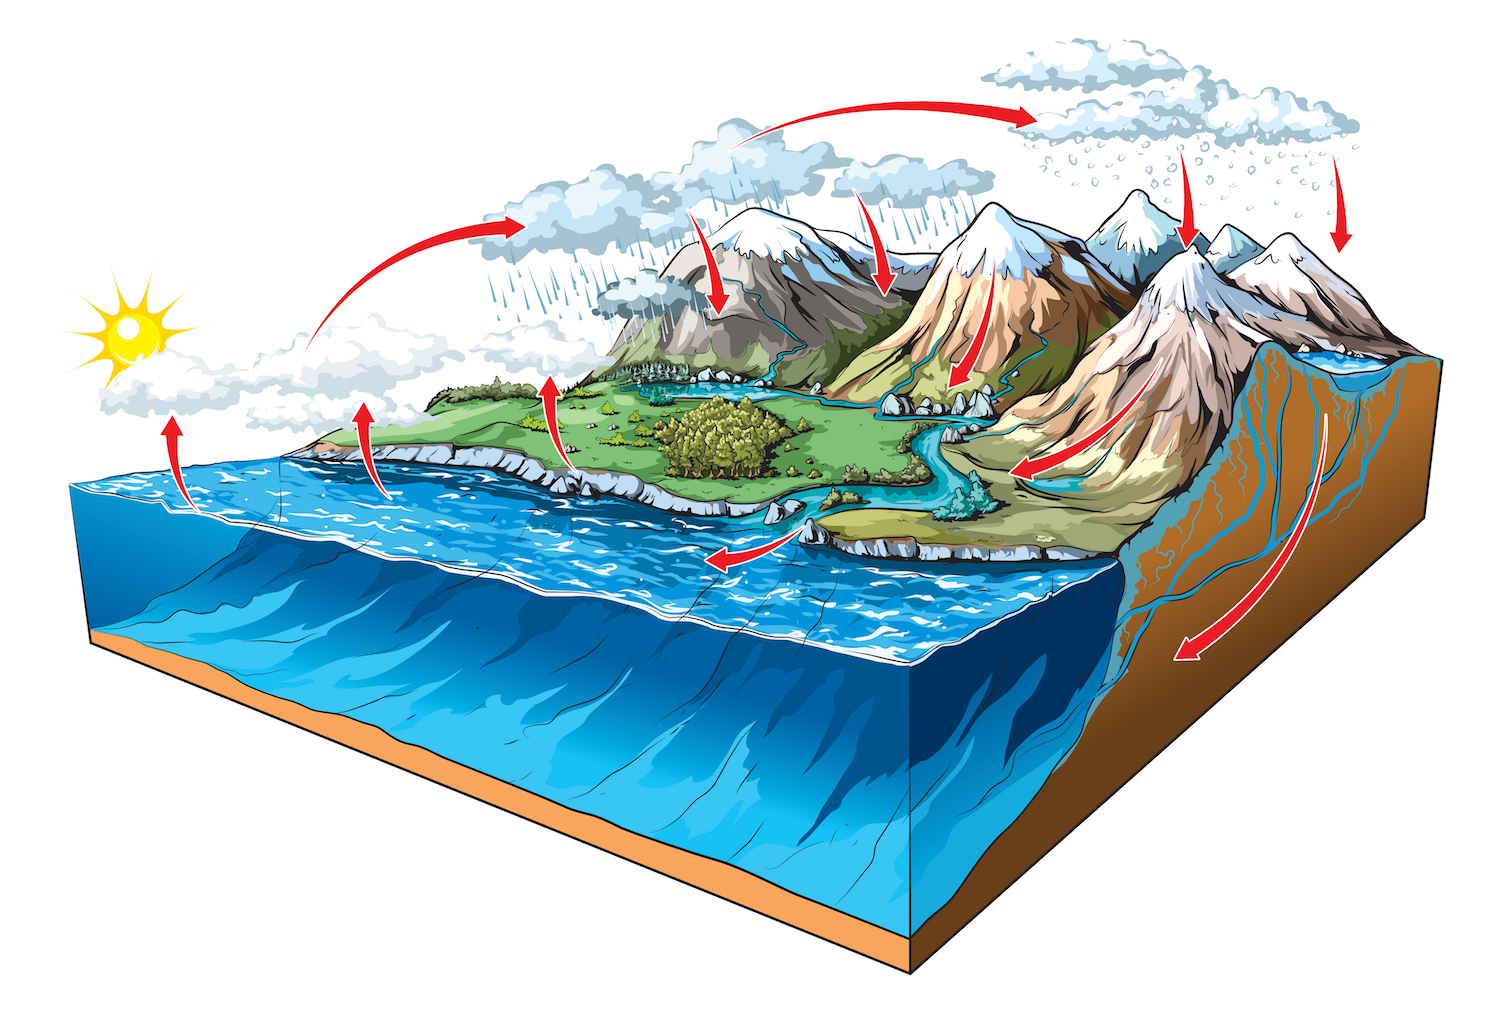 Le cycle de l’eau, ici sur ce schéma, désigne le parcours de l’eau, sous différentes formes, entre les grands réservoirs de la nature que sont, par exemple, les océans, les nappes phréatiques ou l’atmosphère. © NoPainNoGain, Shutterstock